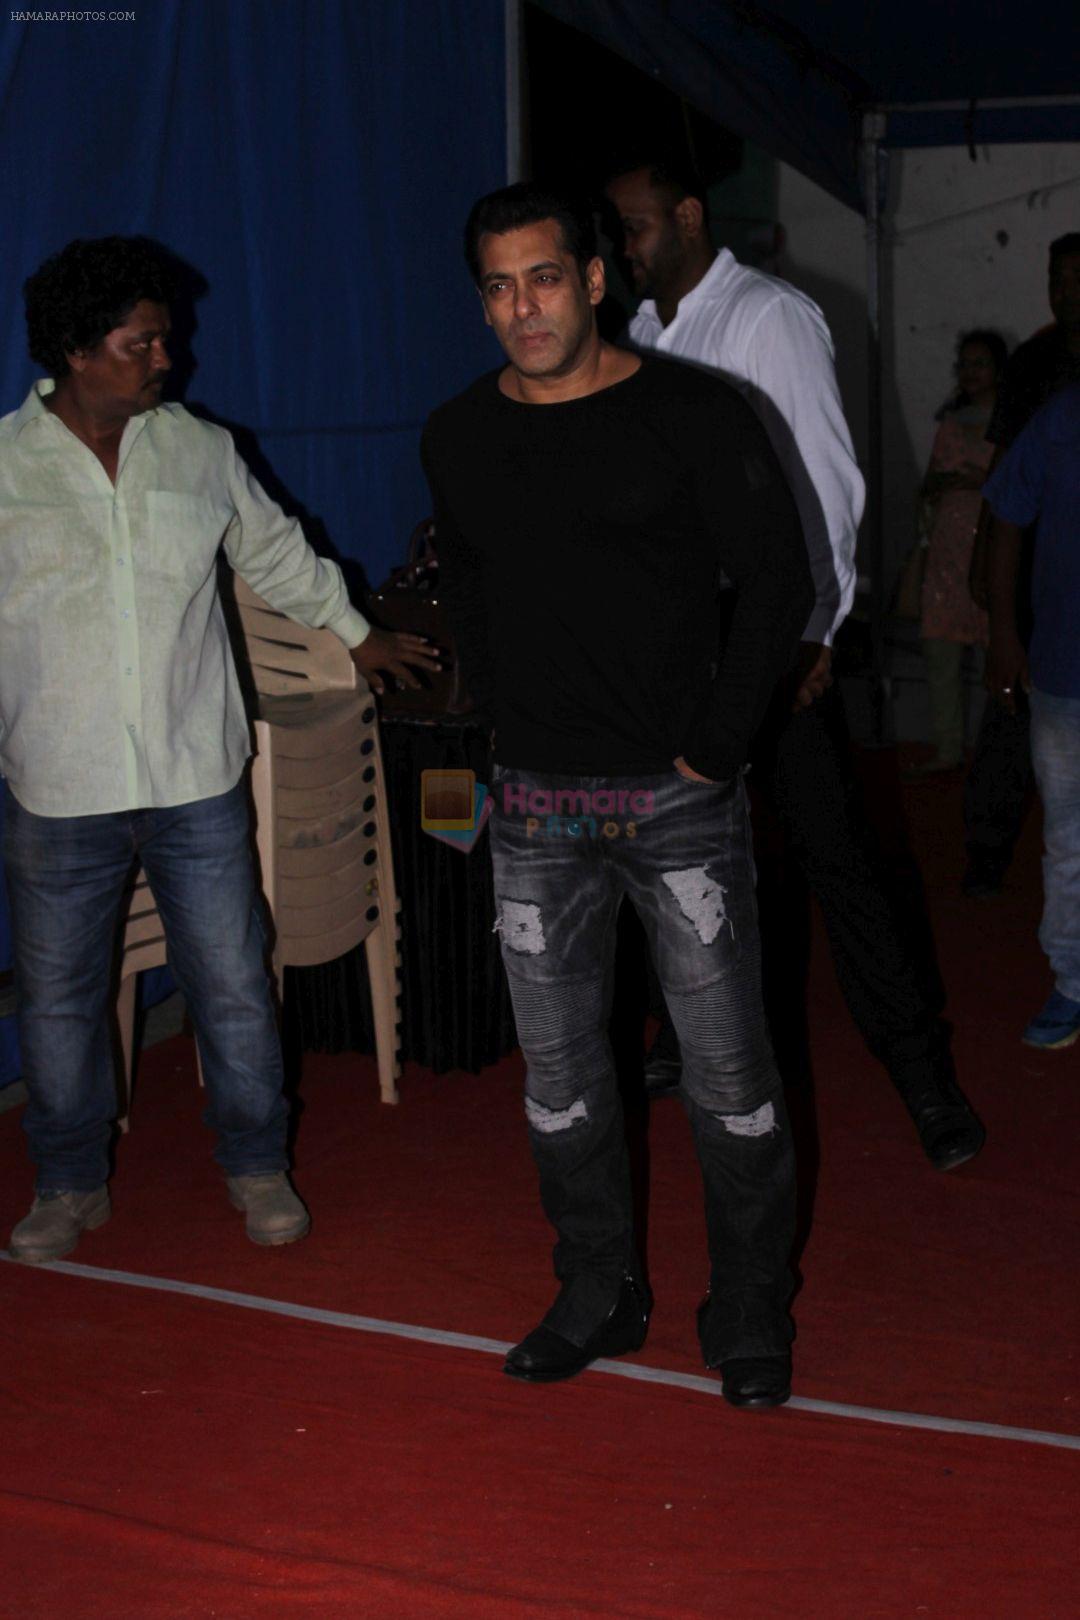 Salman Khan Spotted At Mehboob Studio For Film Promotion Of Tubelight